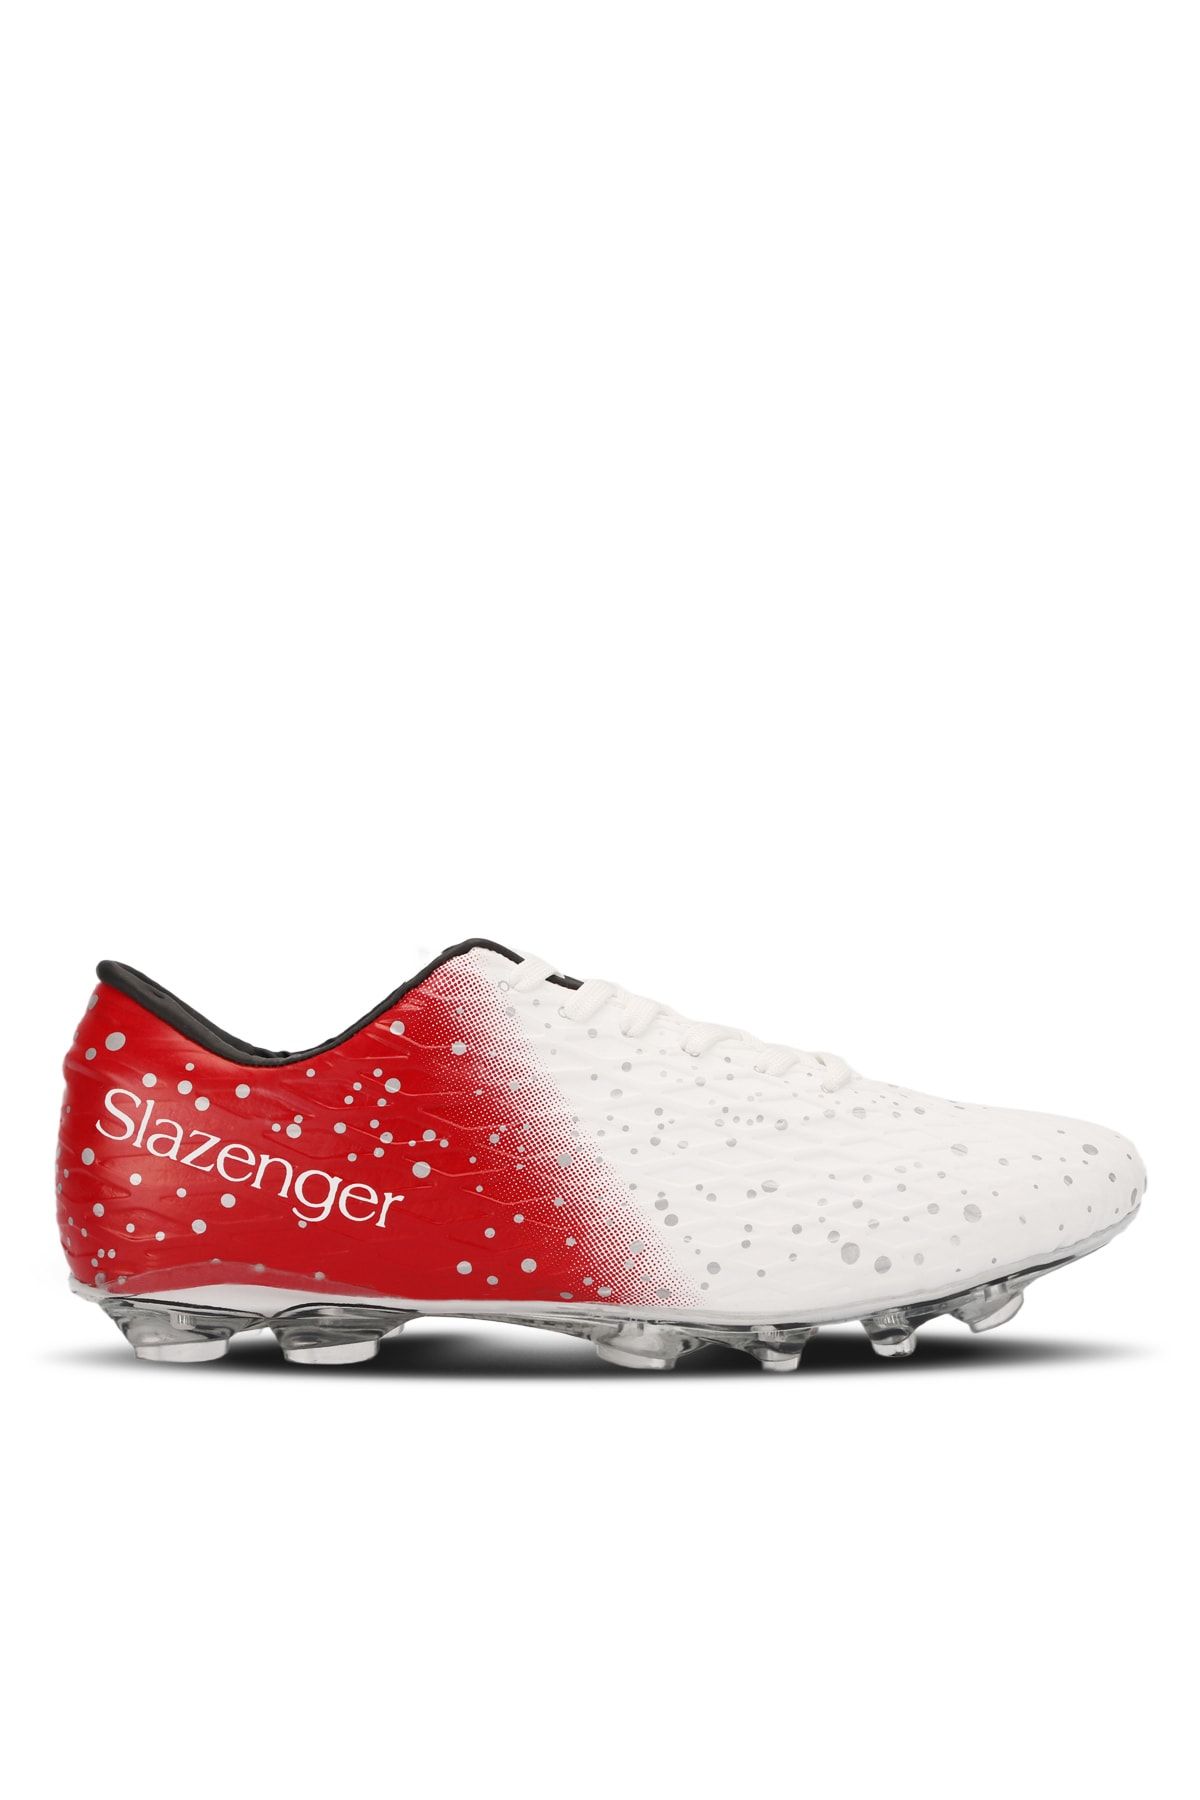 Slazenger Hanıa Krp Futbol Erkek Halı Saha Ayakkabı Beyaz / Kırmızı